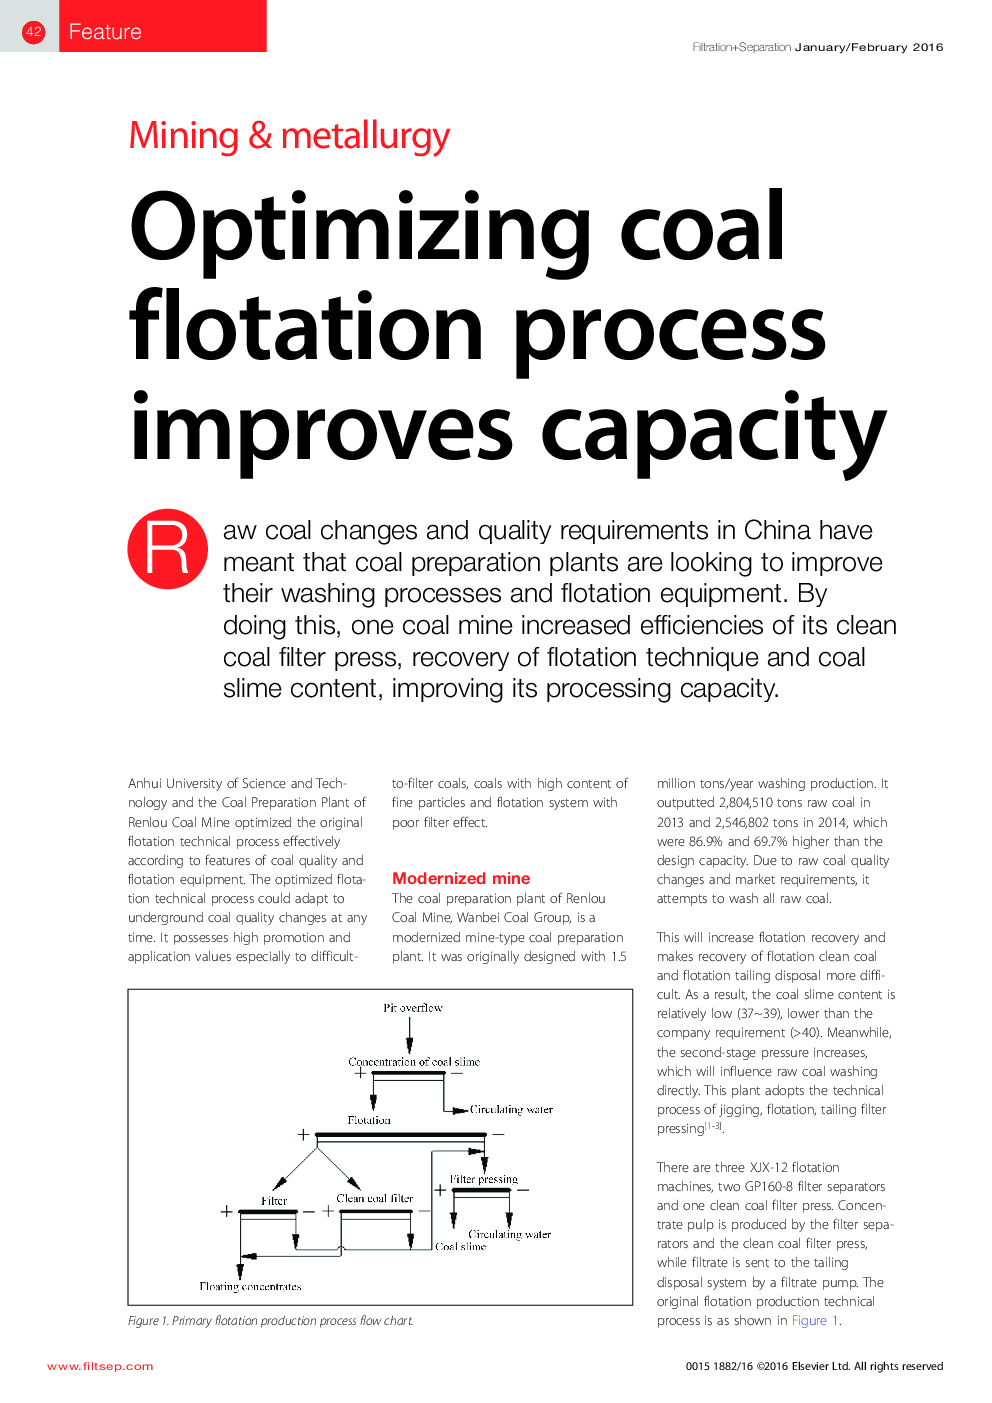 بهینه سازی فرآیند شناور زغال سنگ باعث بهبود ظرفیت می شود